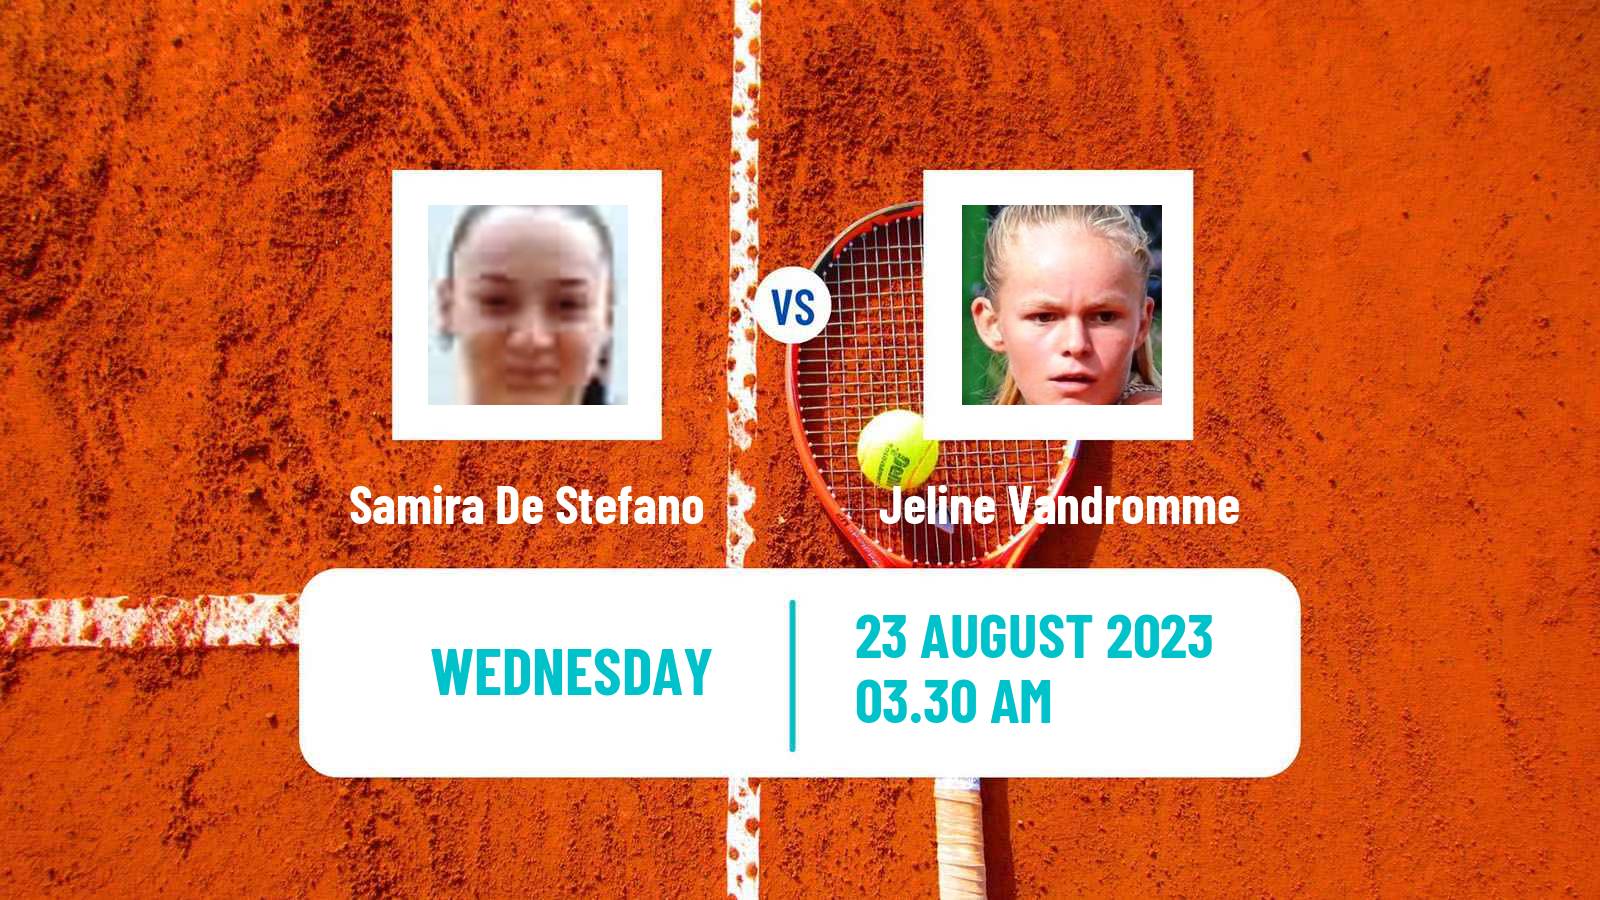 Tennis ITF W15 Wanfercee Baulet Women Samira De Stefano - Jeline Vandromme